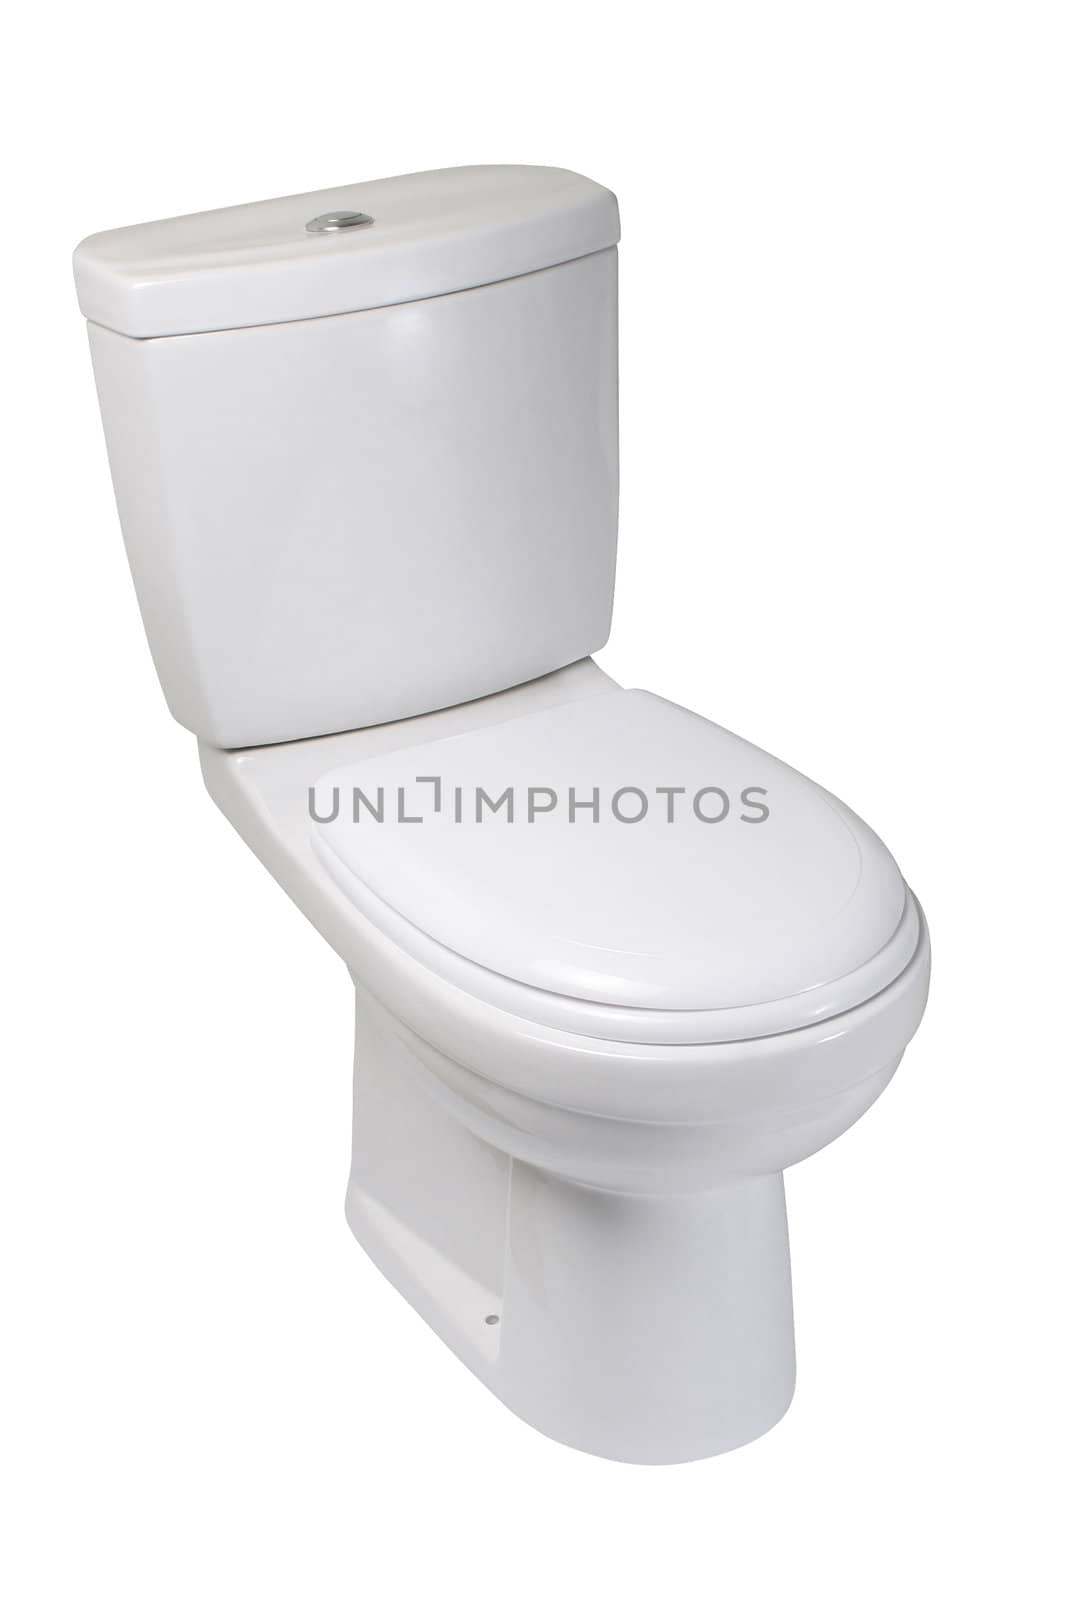 Toilet bowl, isolated on white by igor_stramyk